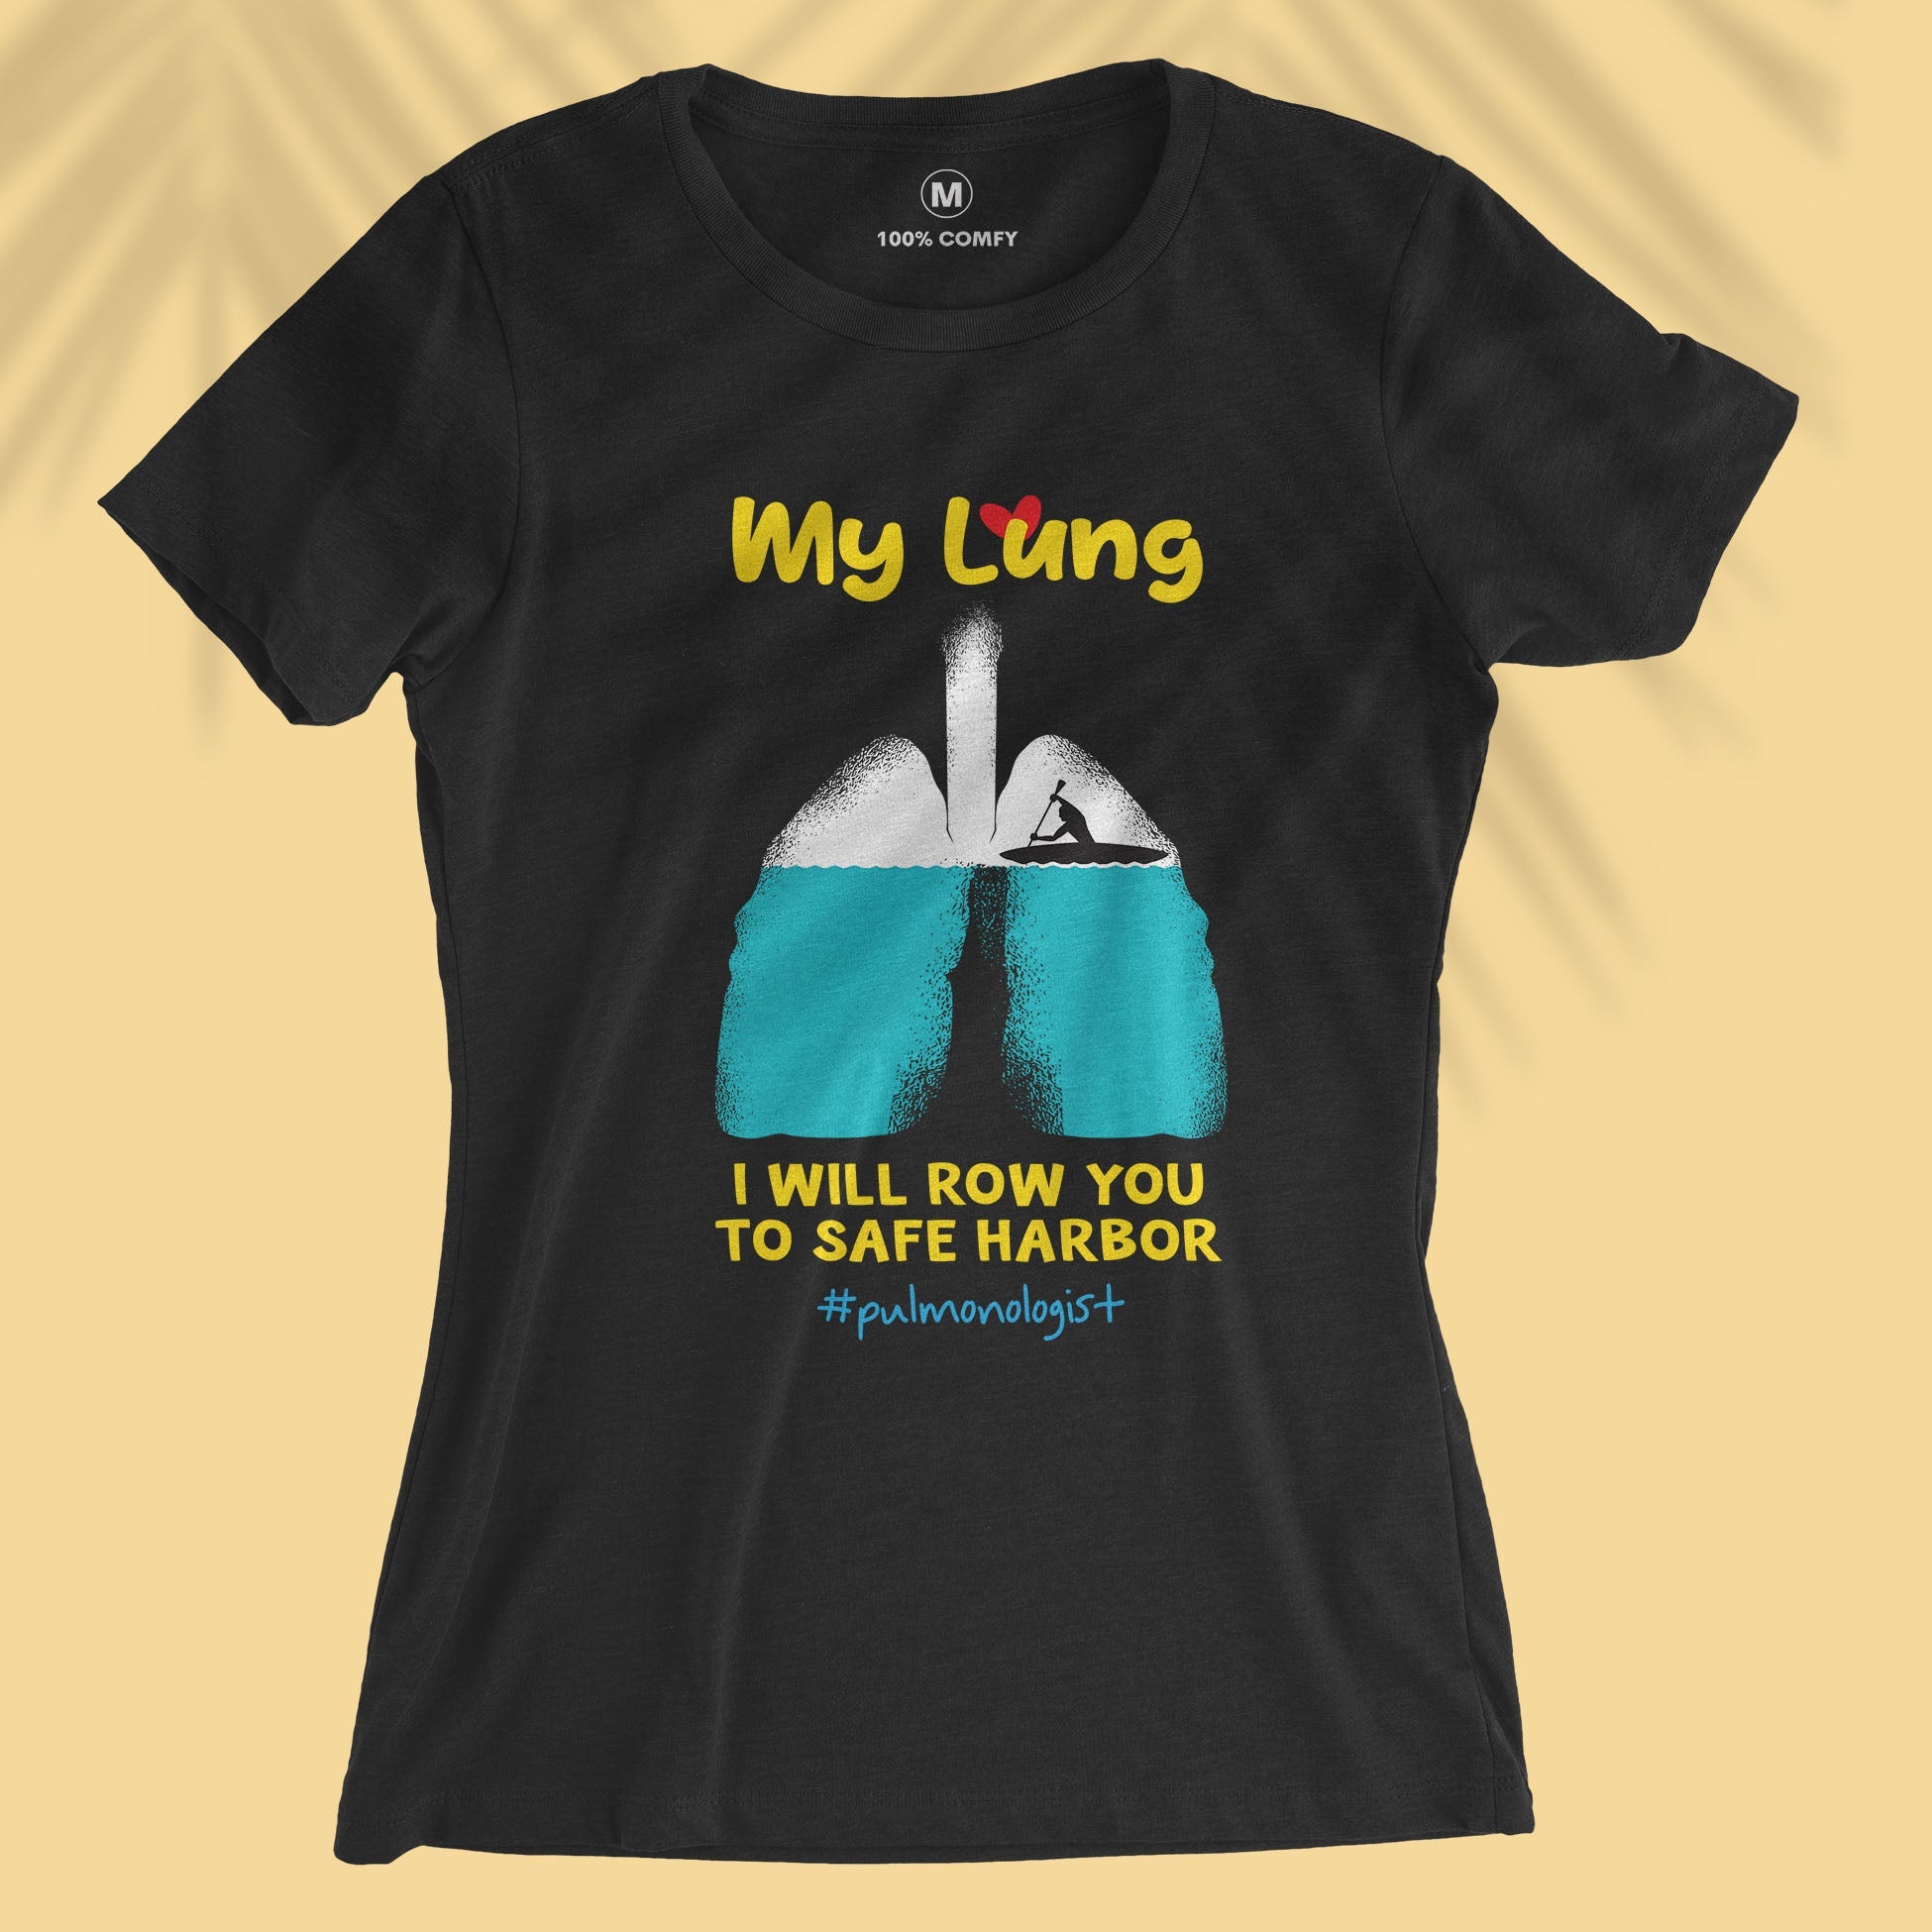 My Lung - Women T-shirt